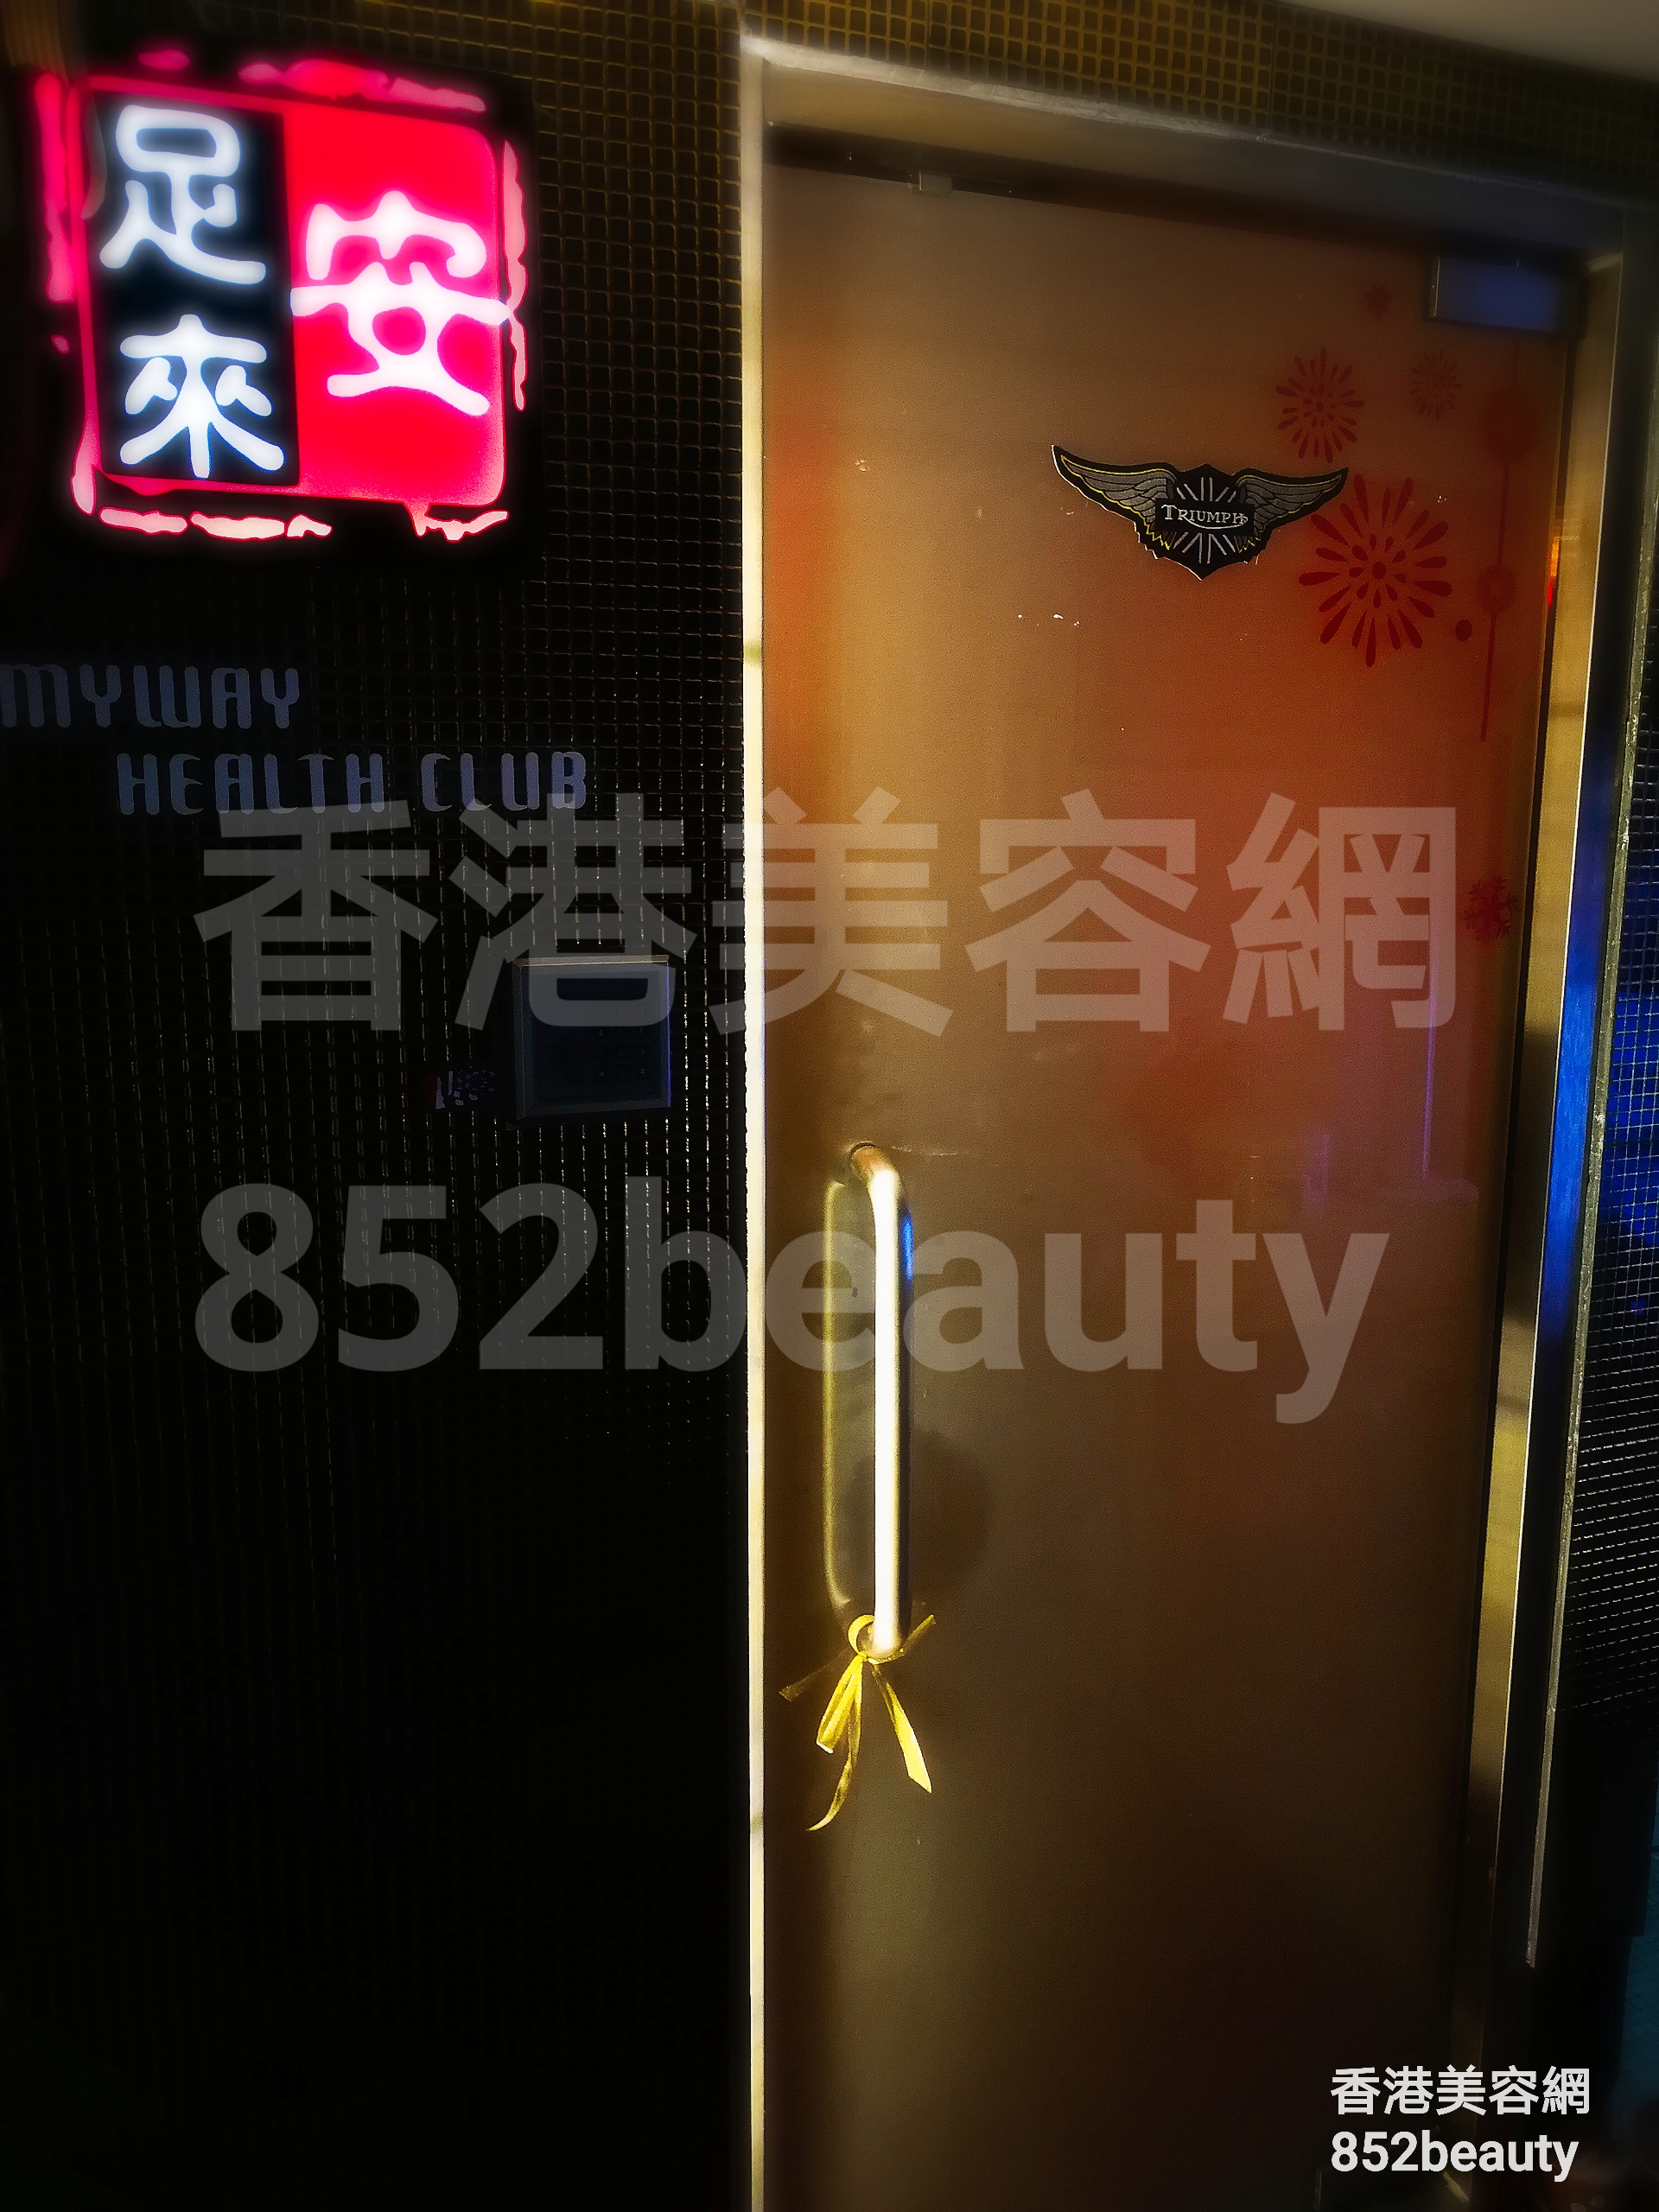 香港美容網 Hong Kong Beauty Salon 美容院 / 美容師: 安足來